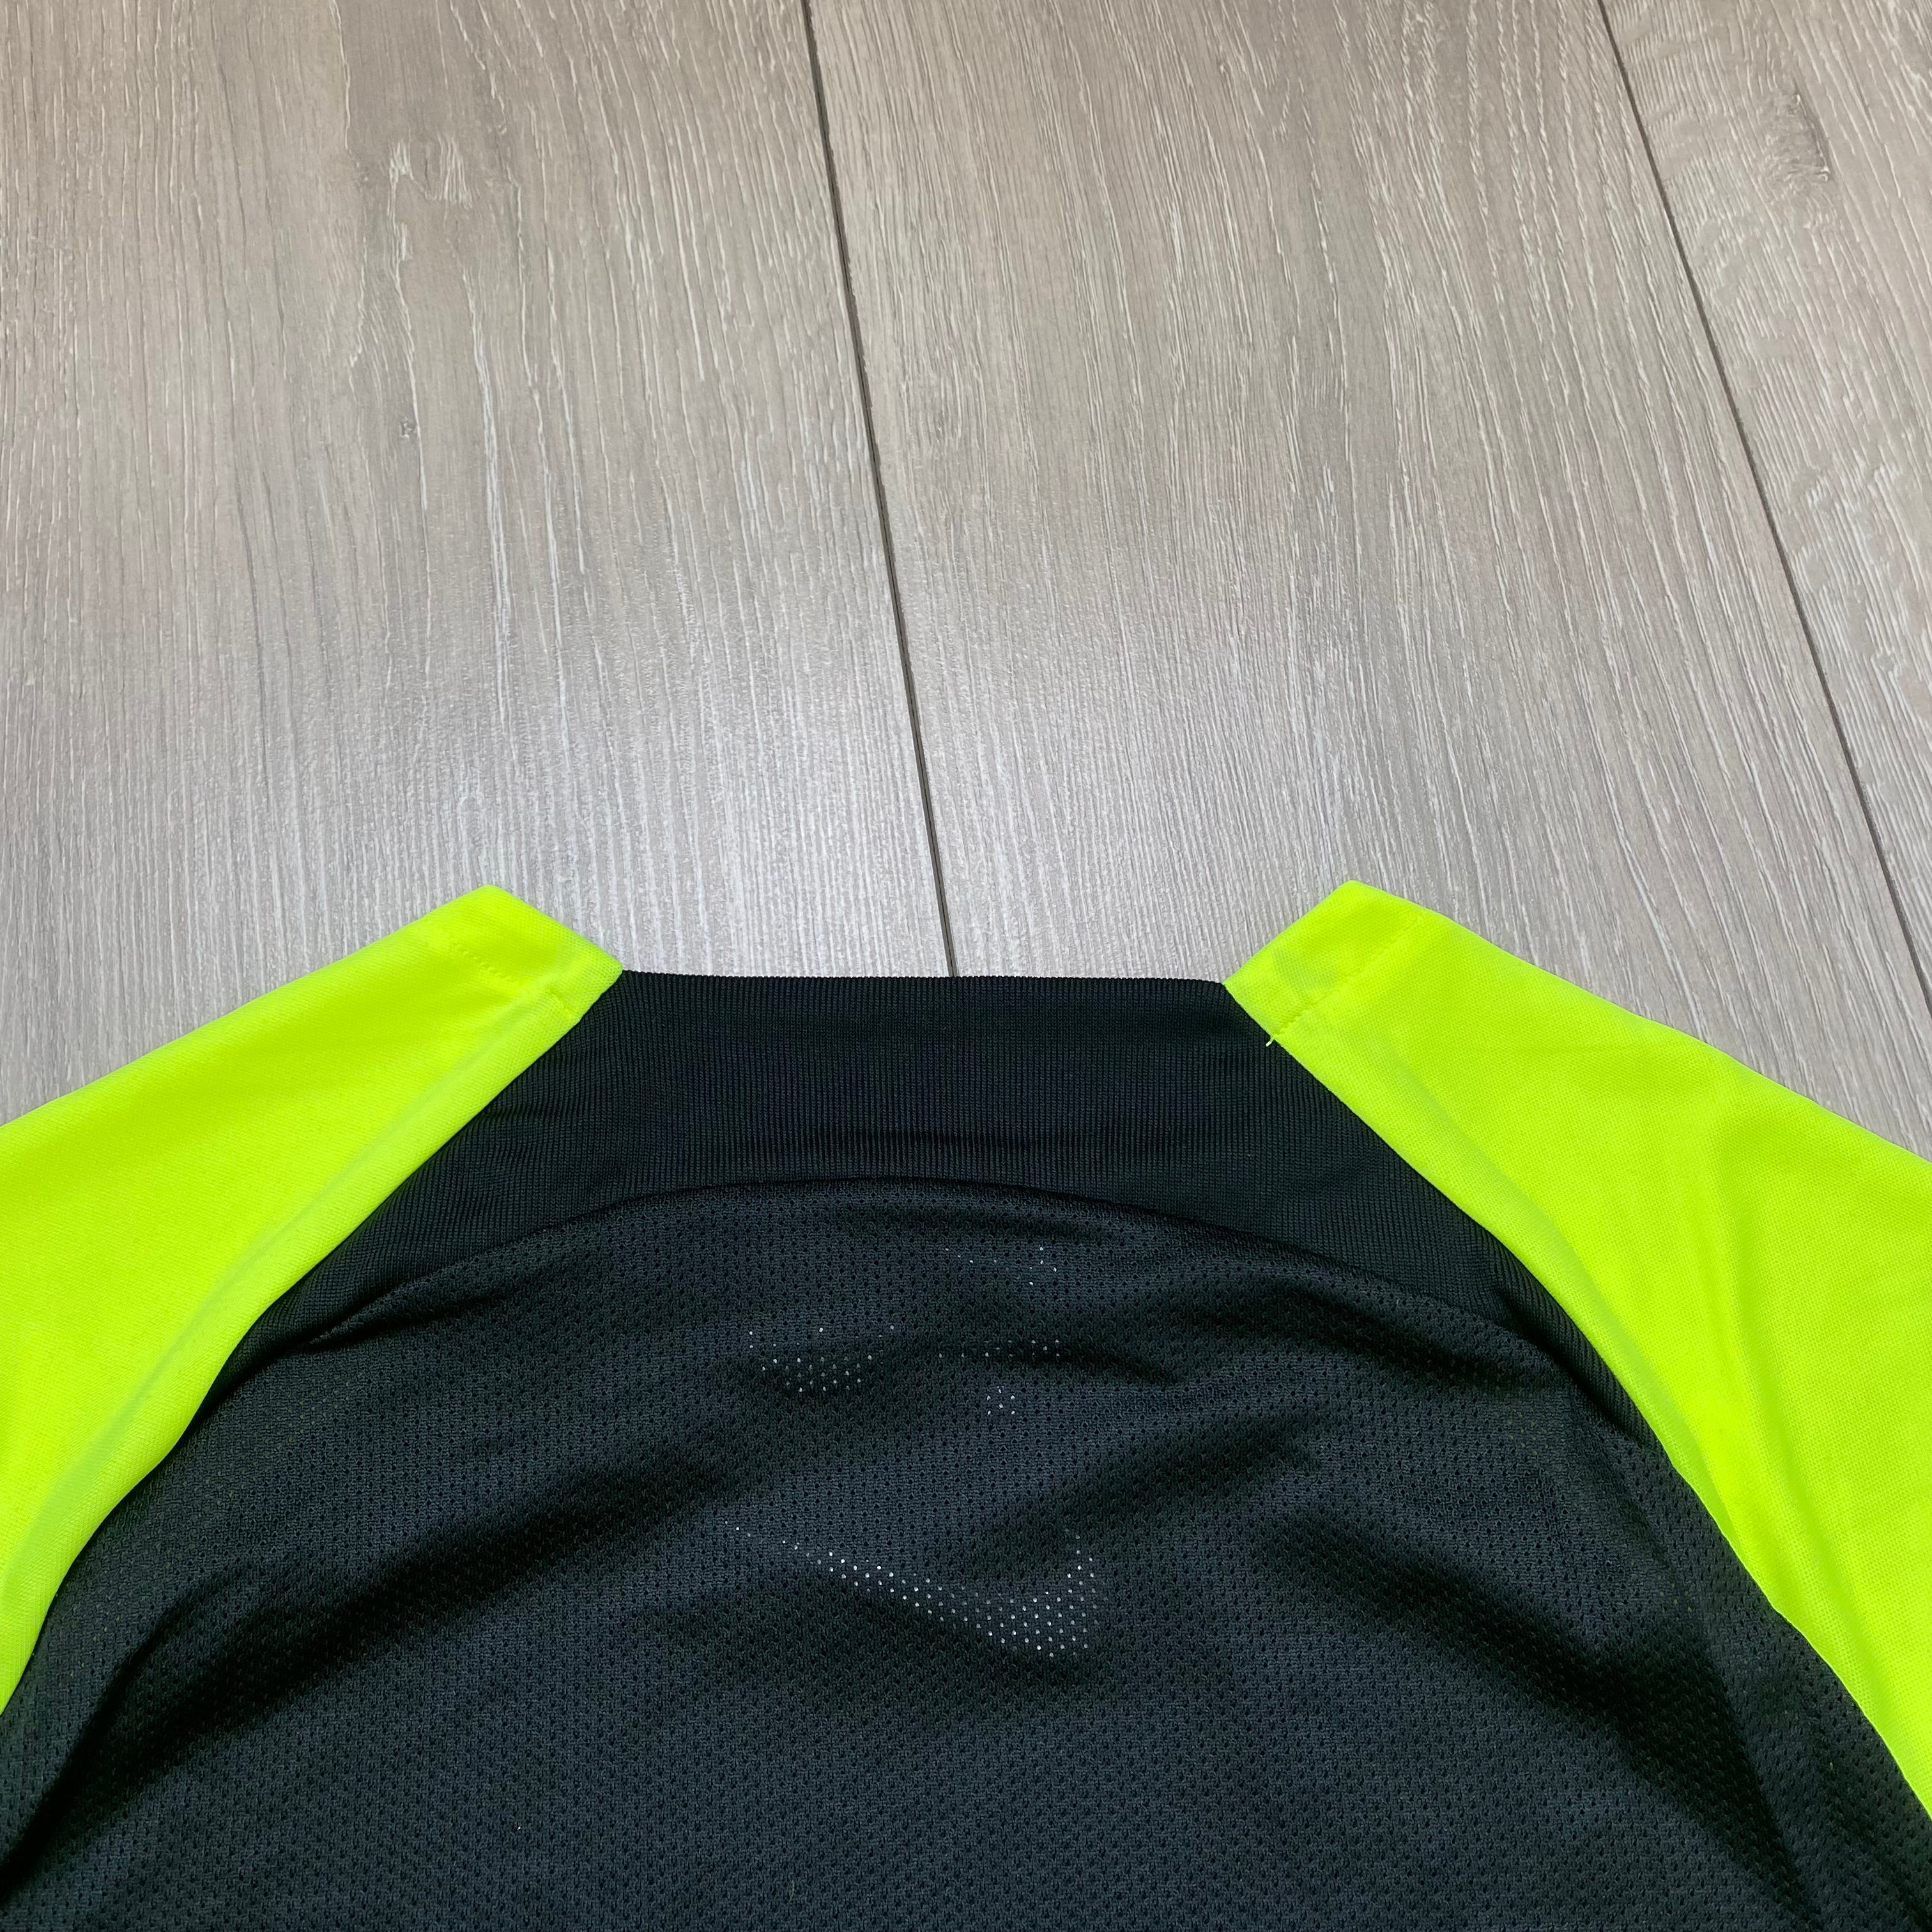 Nike Dri-Fit T-Shirt - Volt